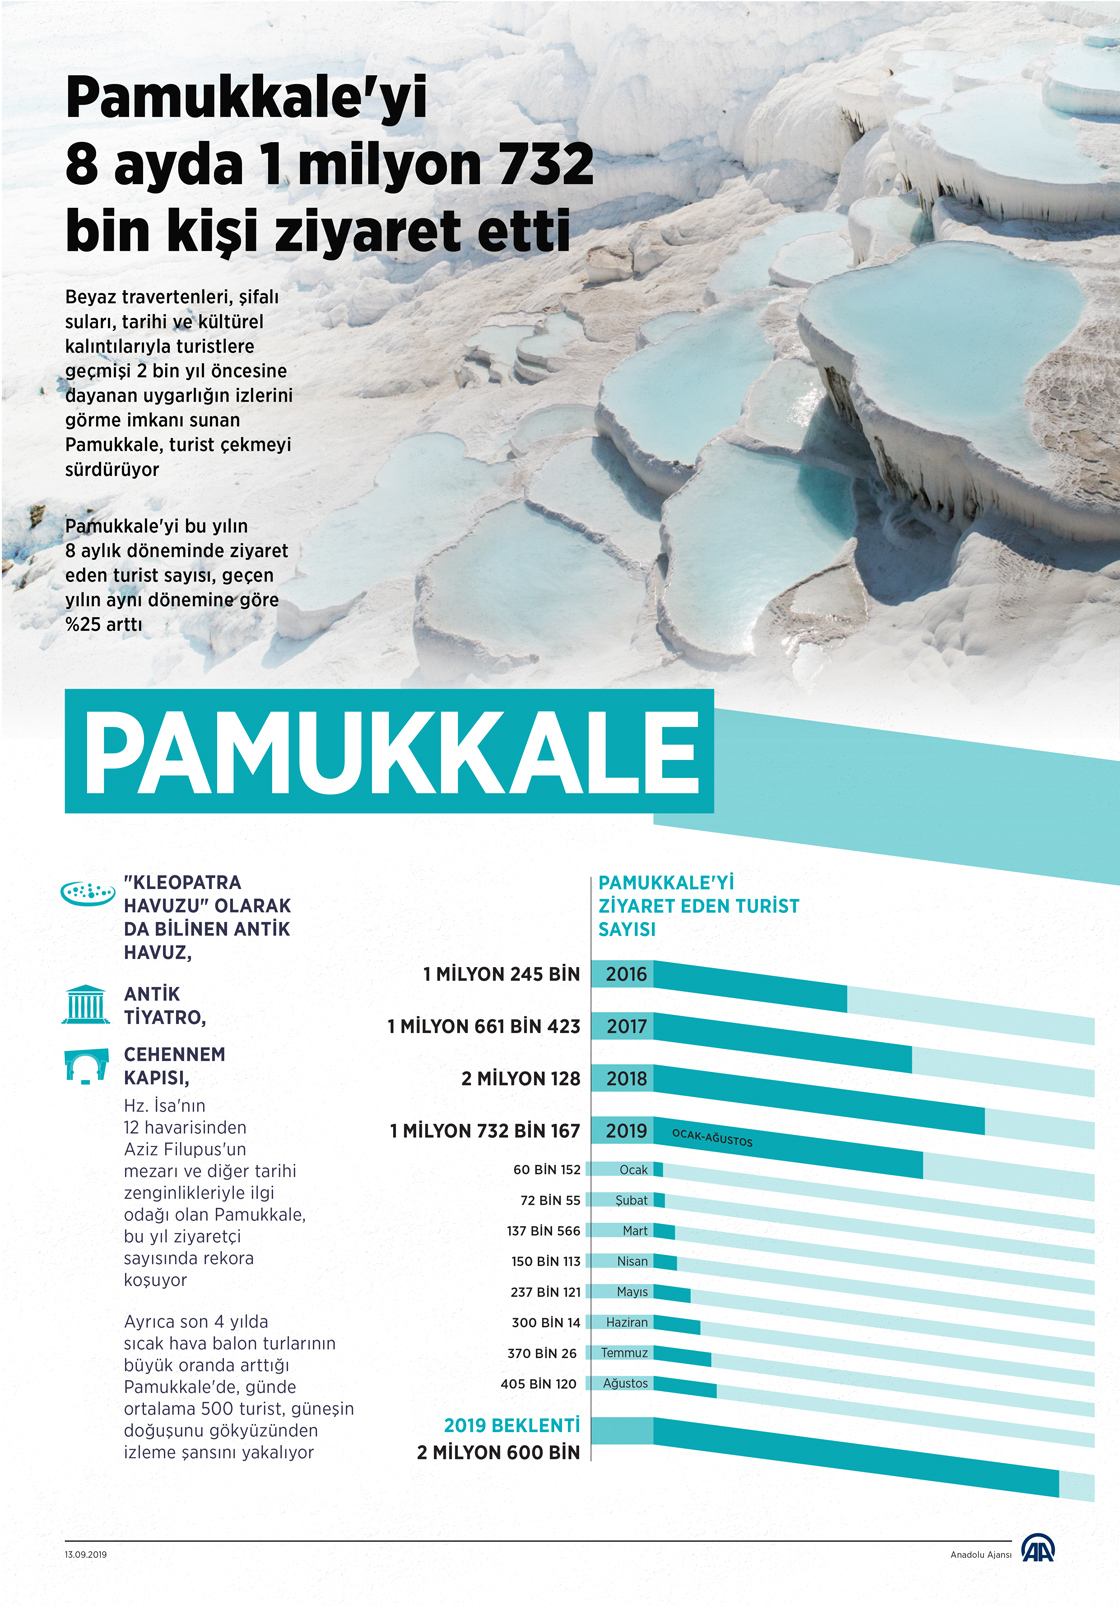 Pamukkale'yi 8 ayda 1 milyon 732 bin kişi ziyaret etti